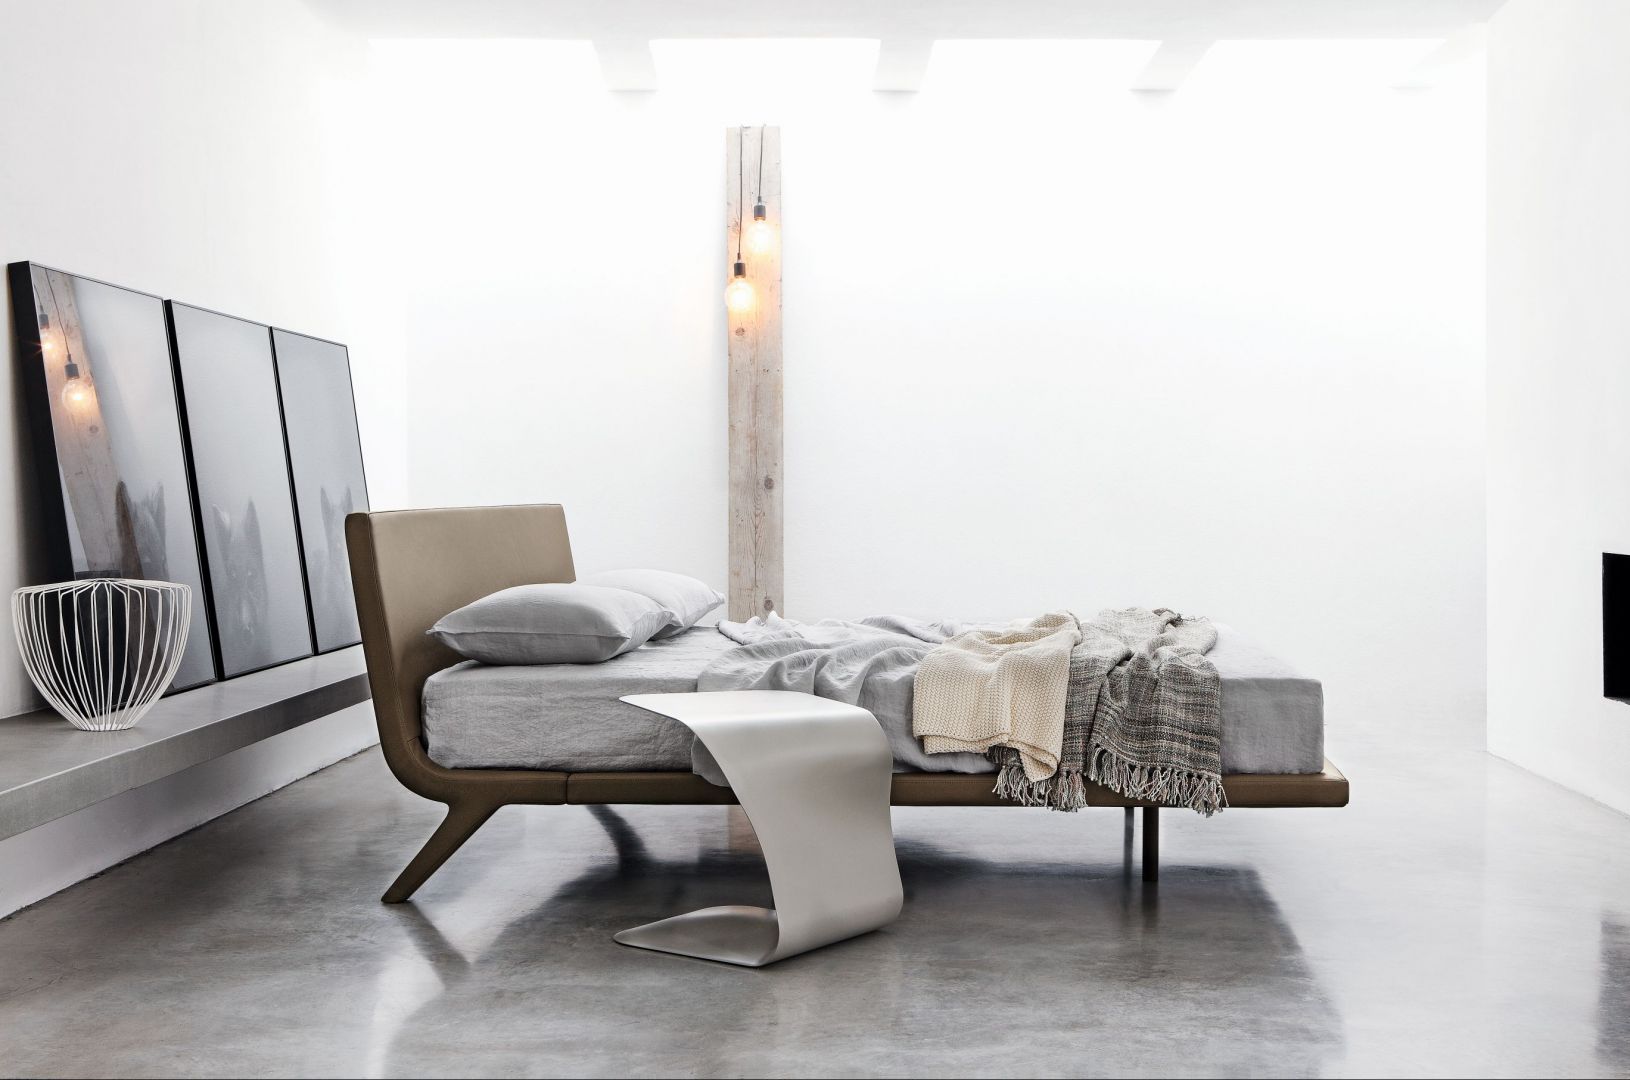 Łóżko na wysokich nóżkach ułatwia utrzymanie pomieszczenia w czystości. Fot. Bonaldo